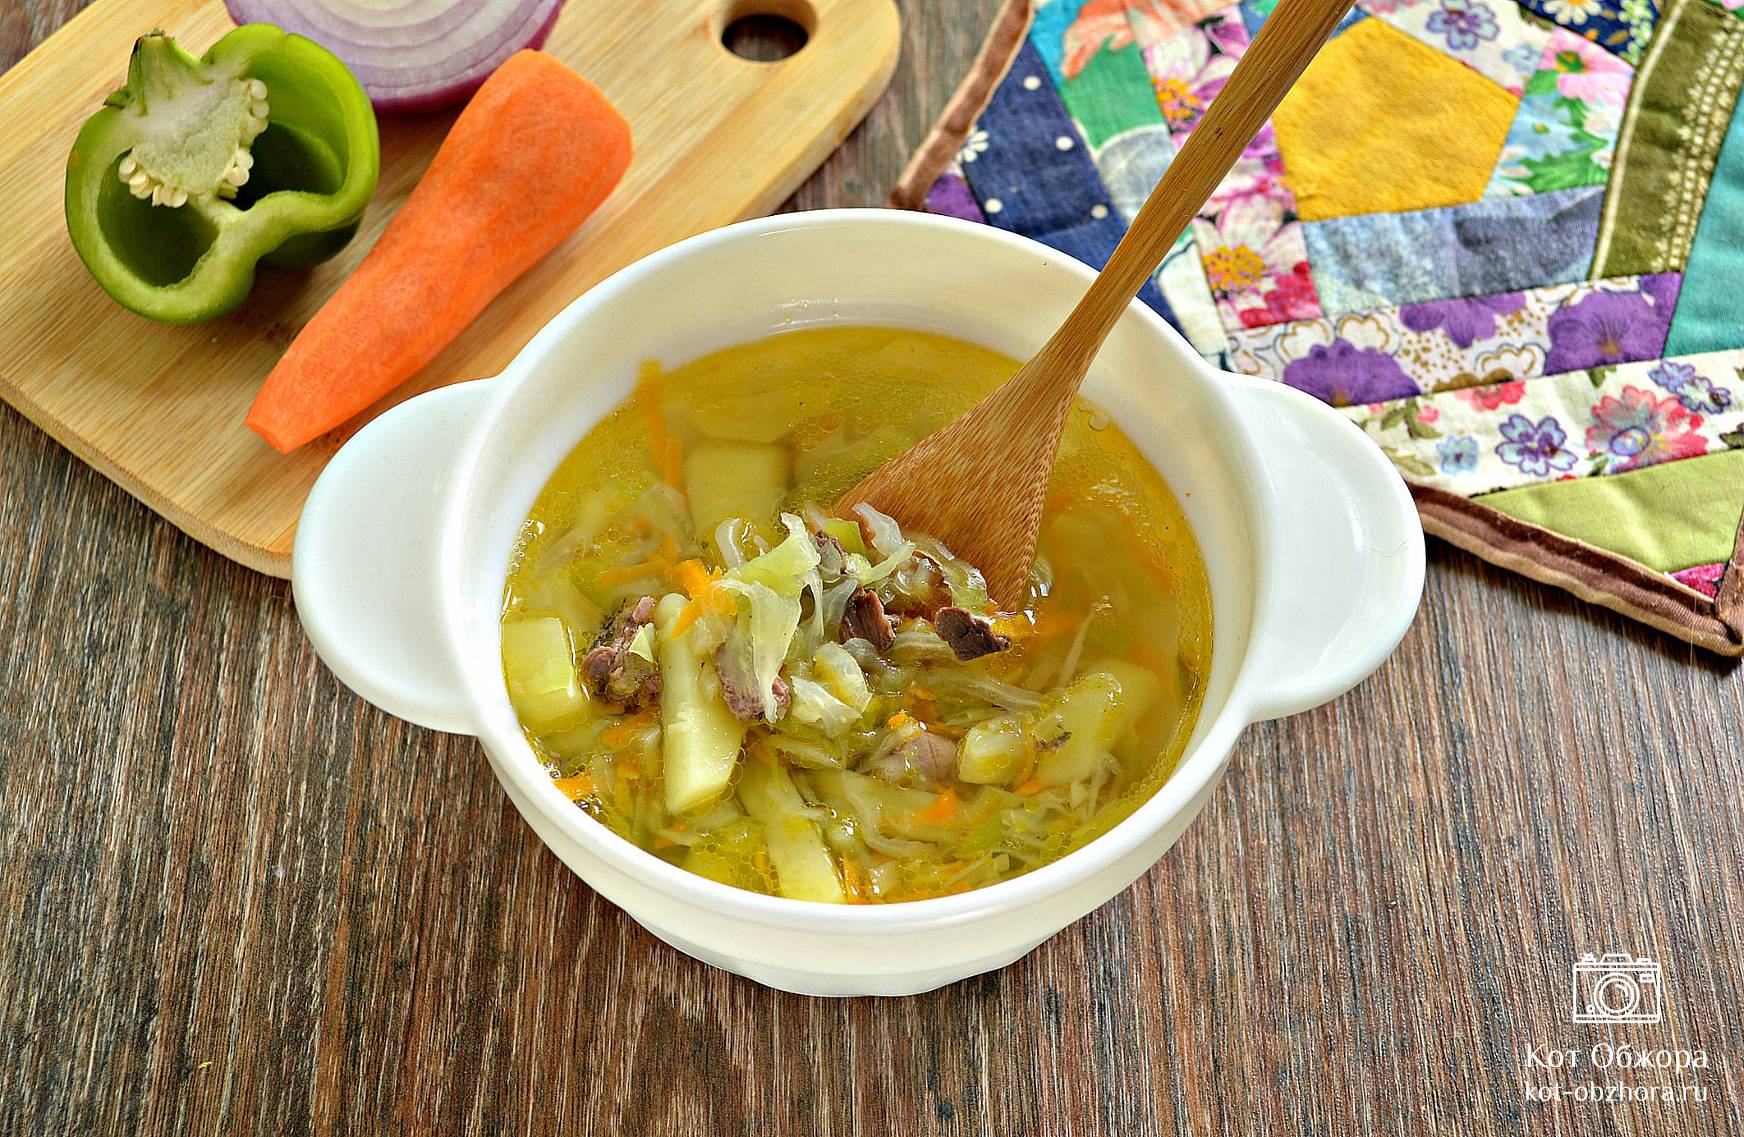 Суп щи из свежей капусты с говядиной рецепт с фото